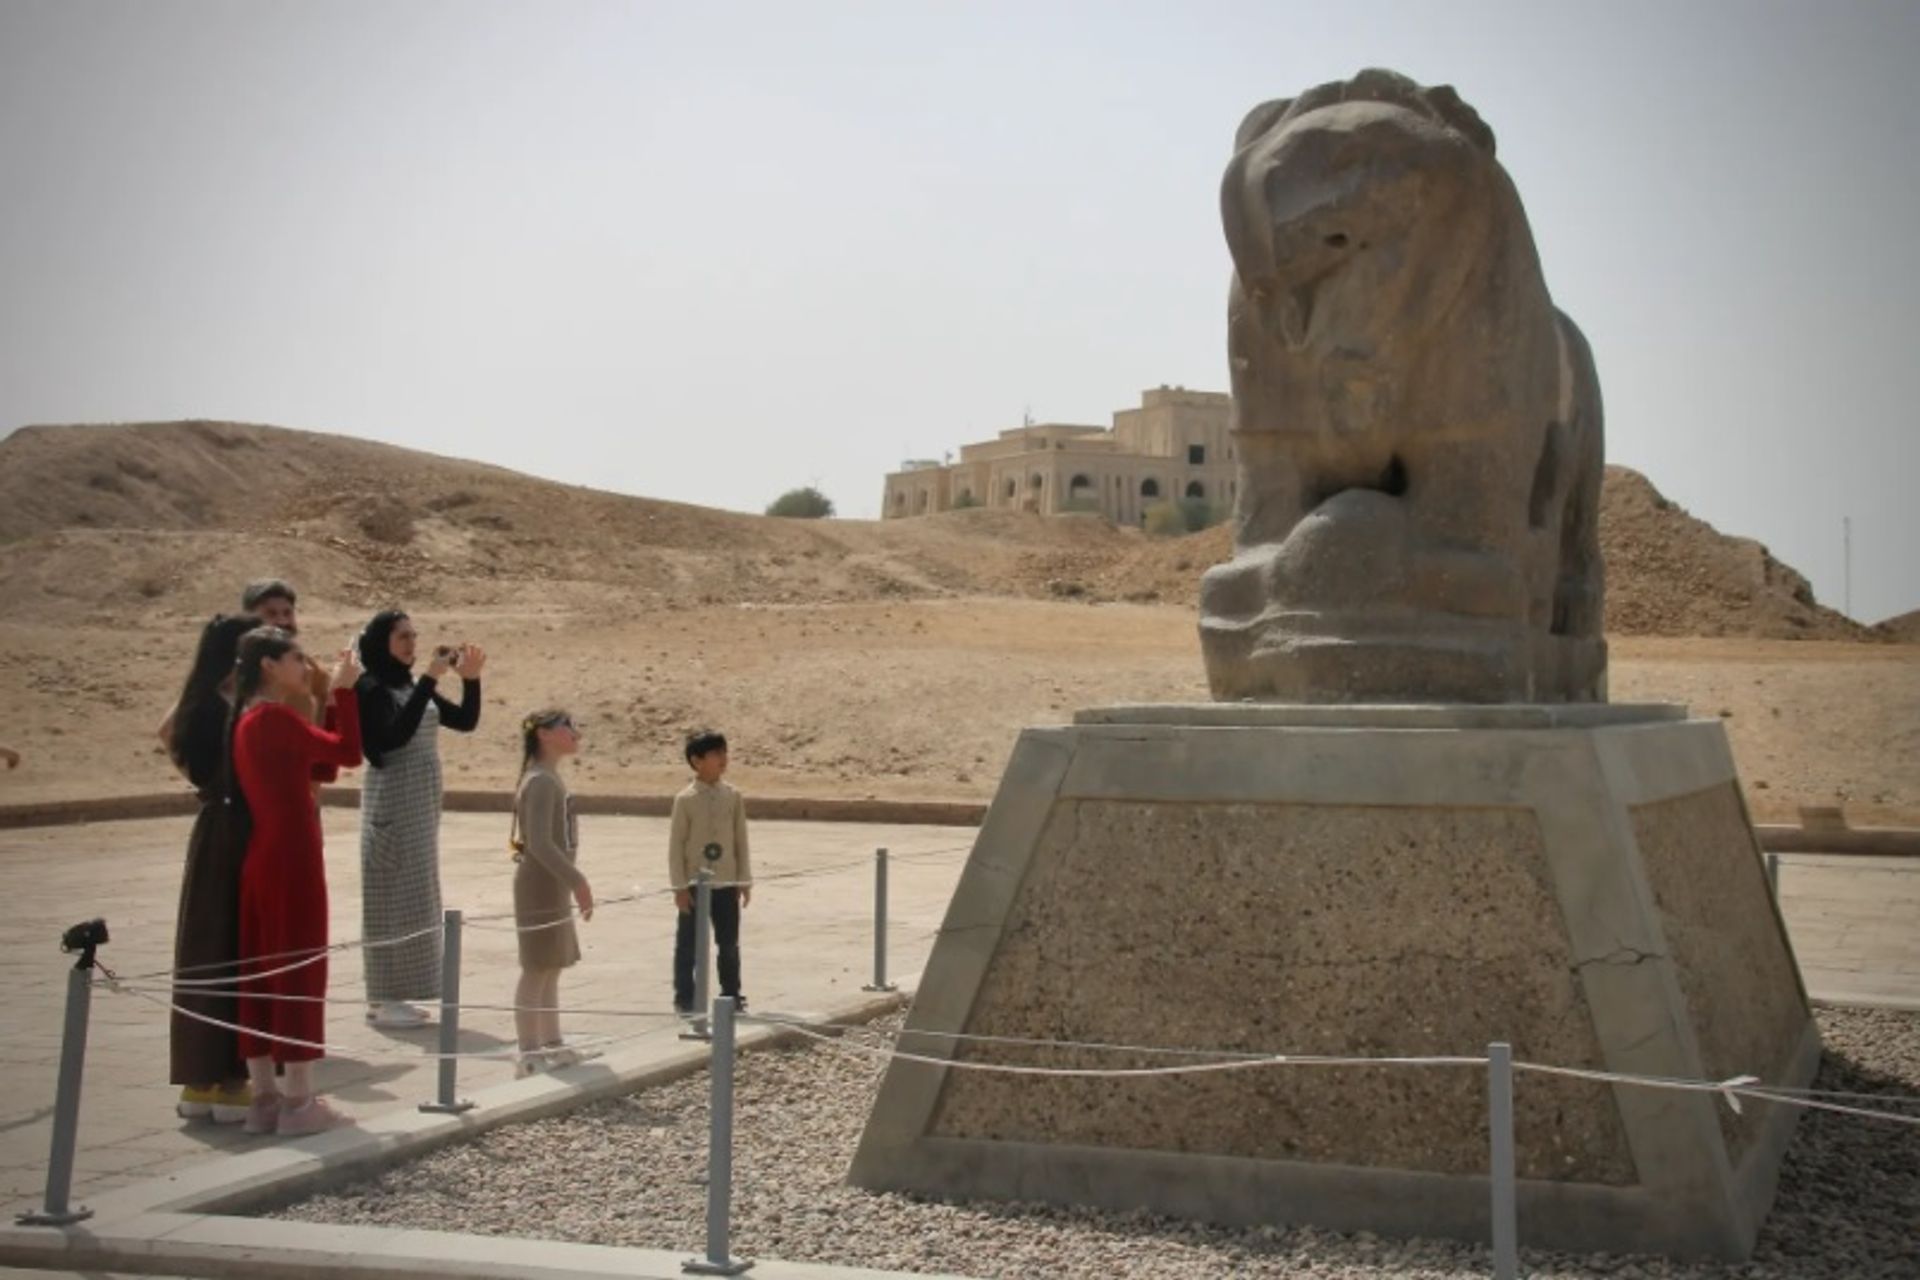 קרן האנדרטאות העולמית סייעה בשימור פסל האריה המפורסם של בבל

צילום: הדני דיטמרס